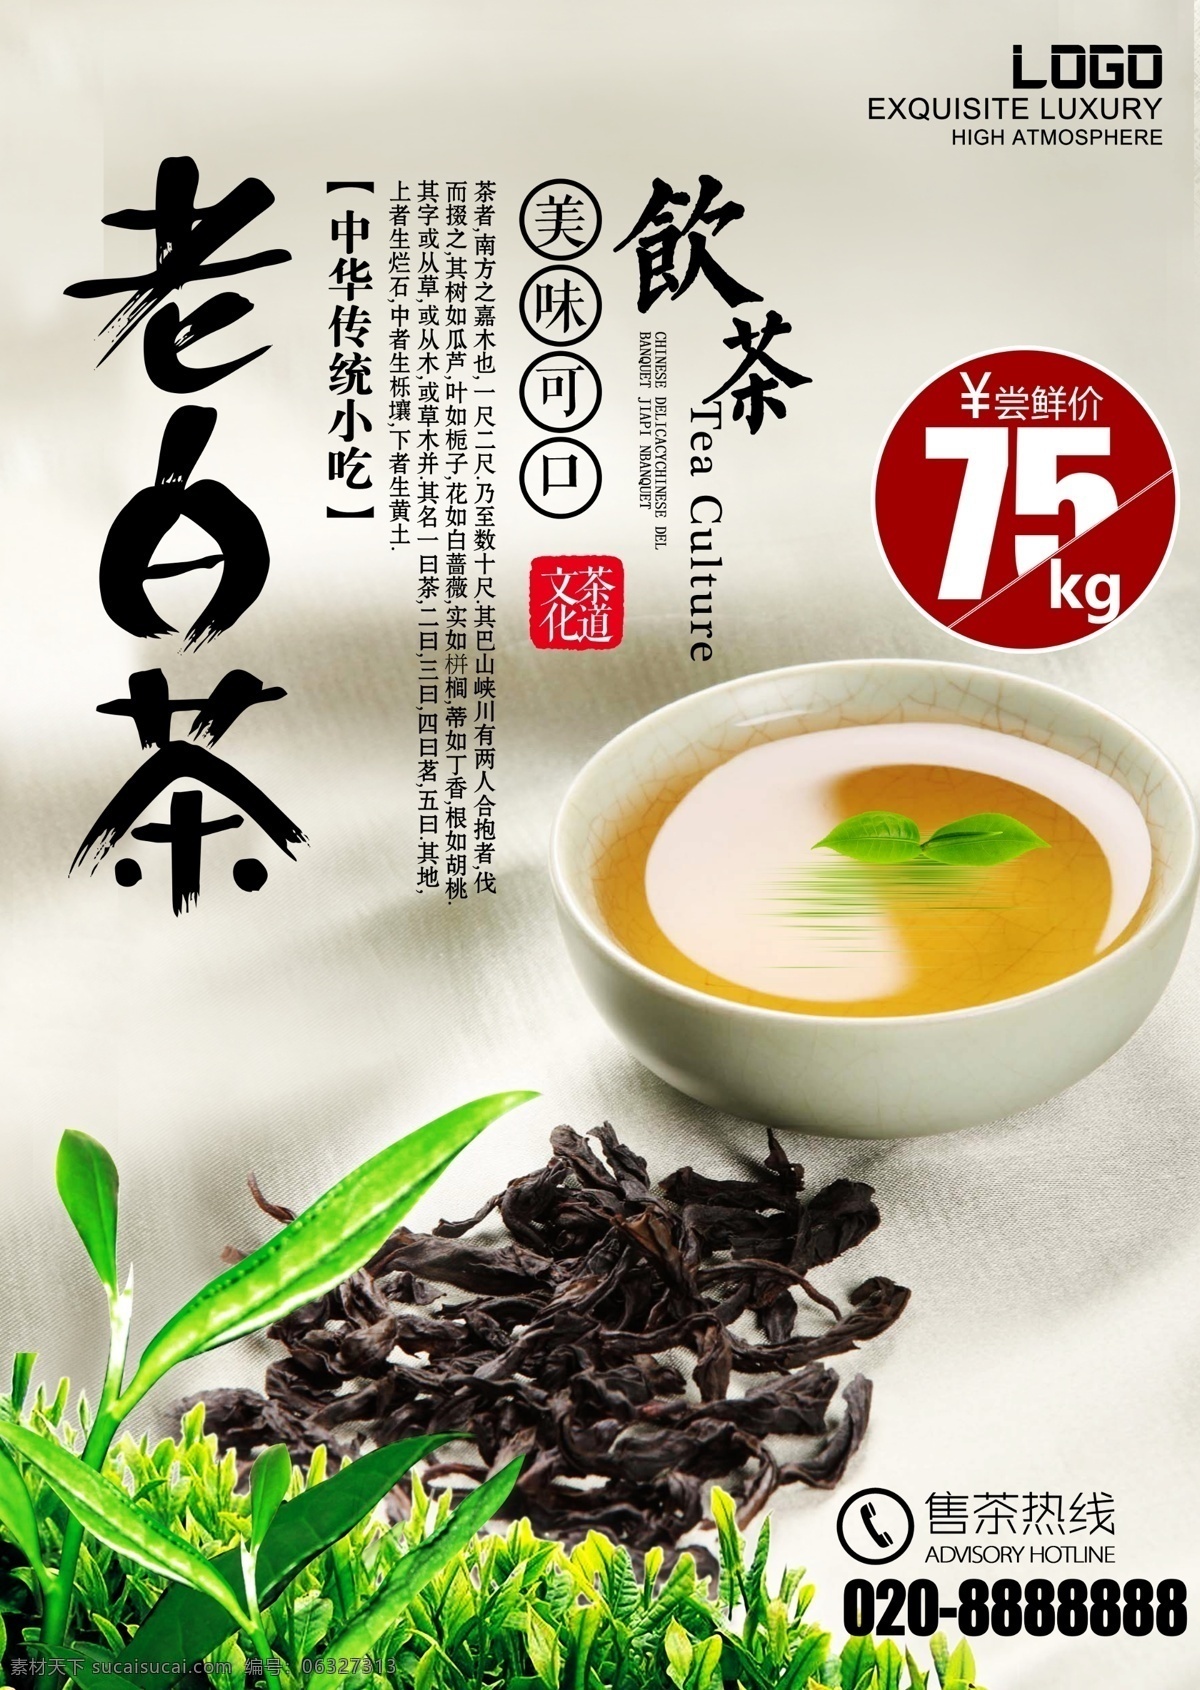 老 白茶 中国 茶文化 海报 茶道文化 中国风风格 茶叶 茶杯 茶水 绿叶 价格标签 茶坊 菜单 免费 模板下载